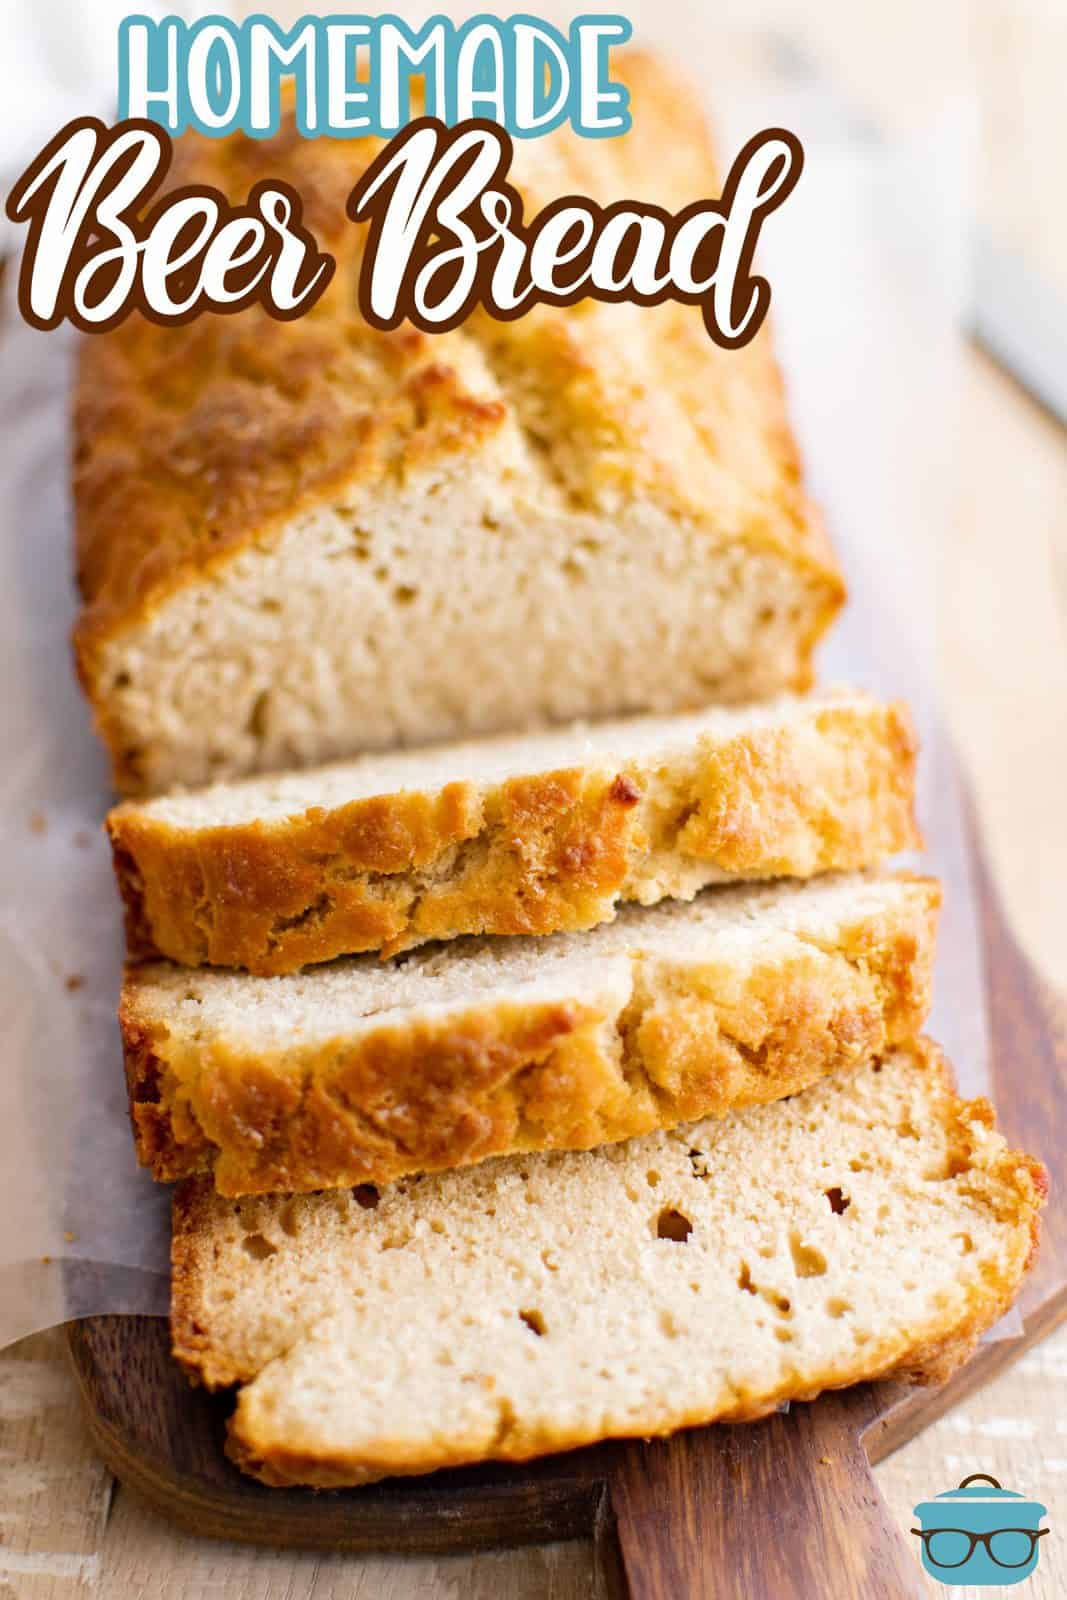 Pinterest image of half a loaf of Homemade Beer Bread sliced.